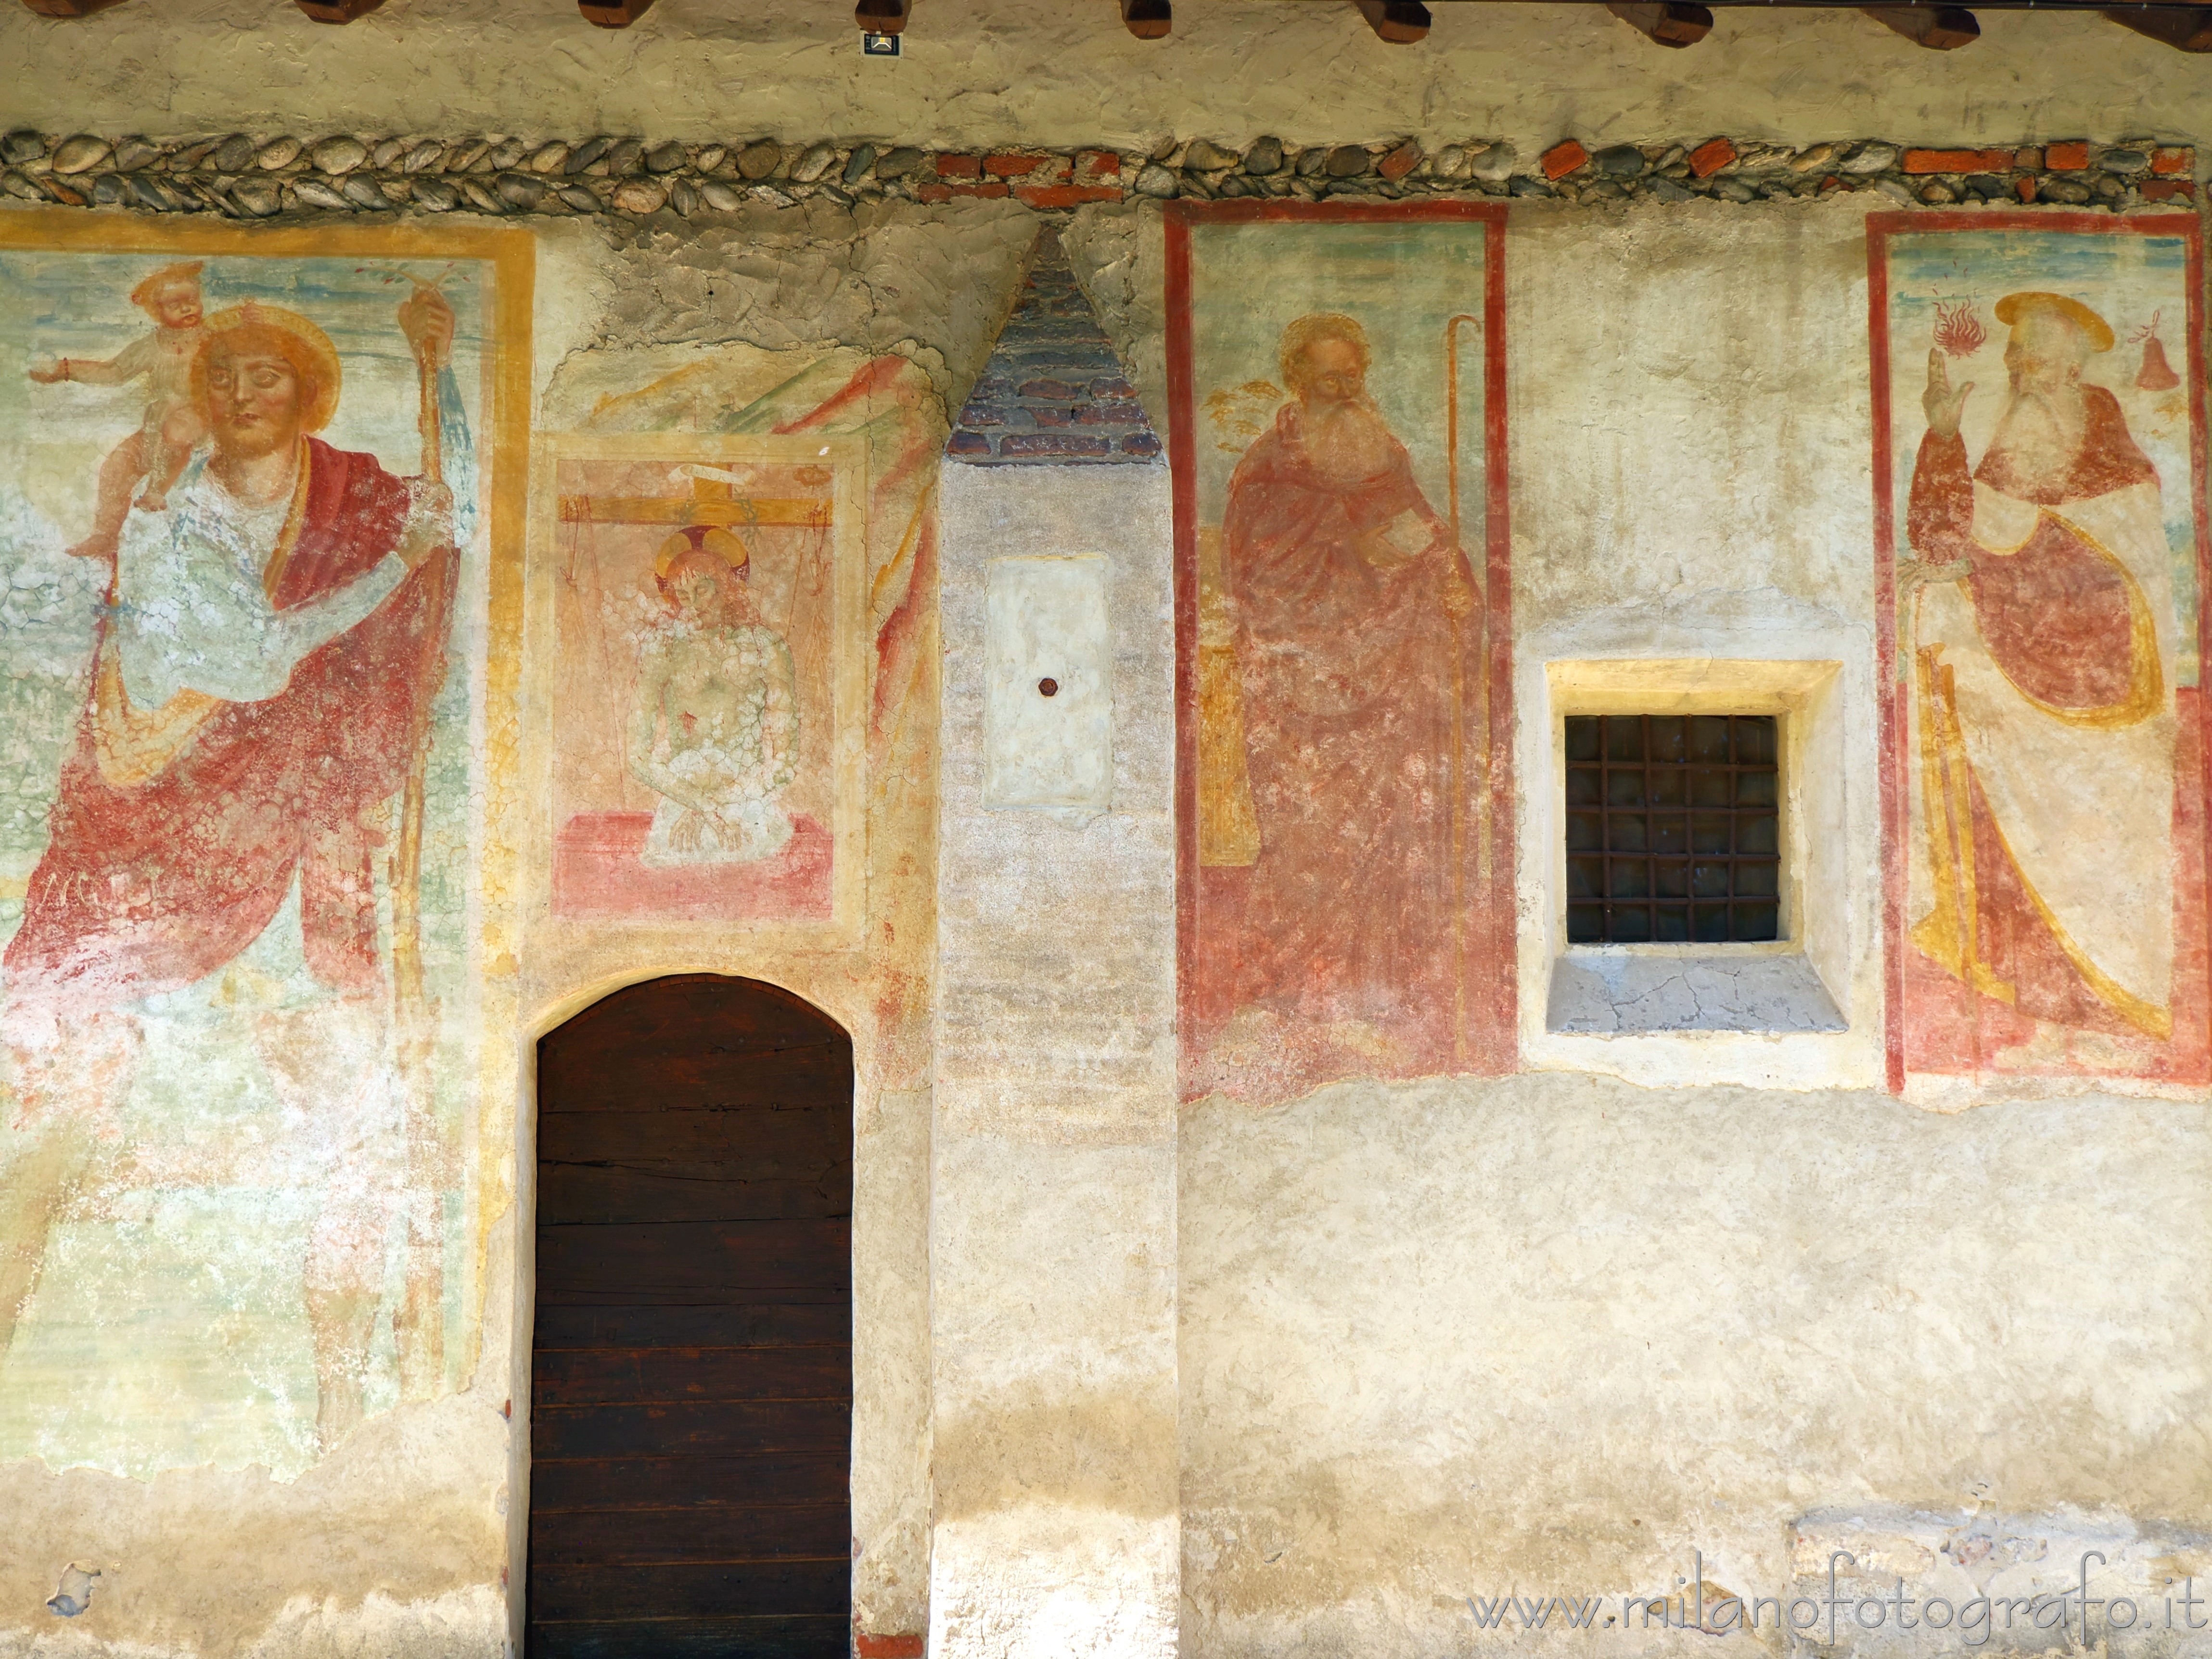 Momo (Novara, Italy): Frescoes on the right wall of the Oratory of the Holy Trinity - Momo (Novara, Italy)